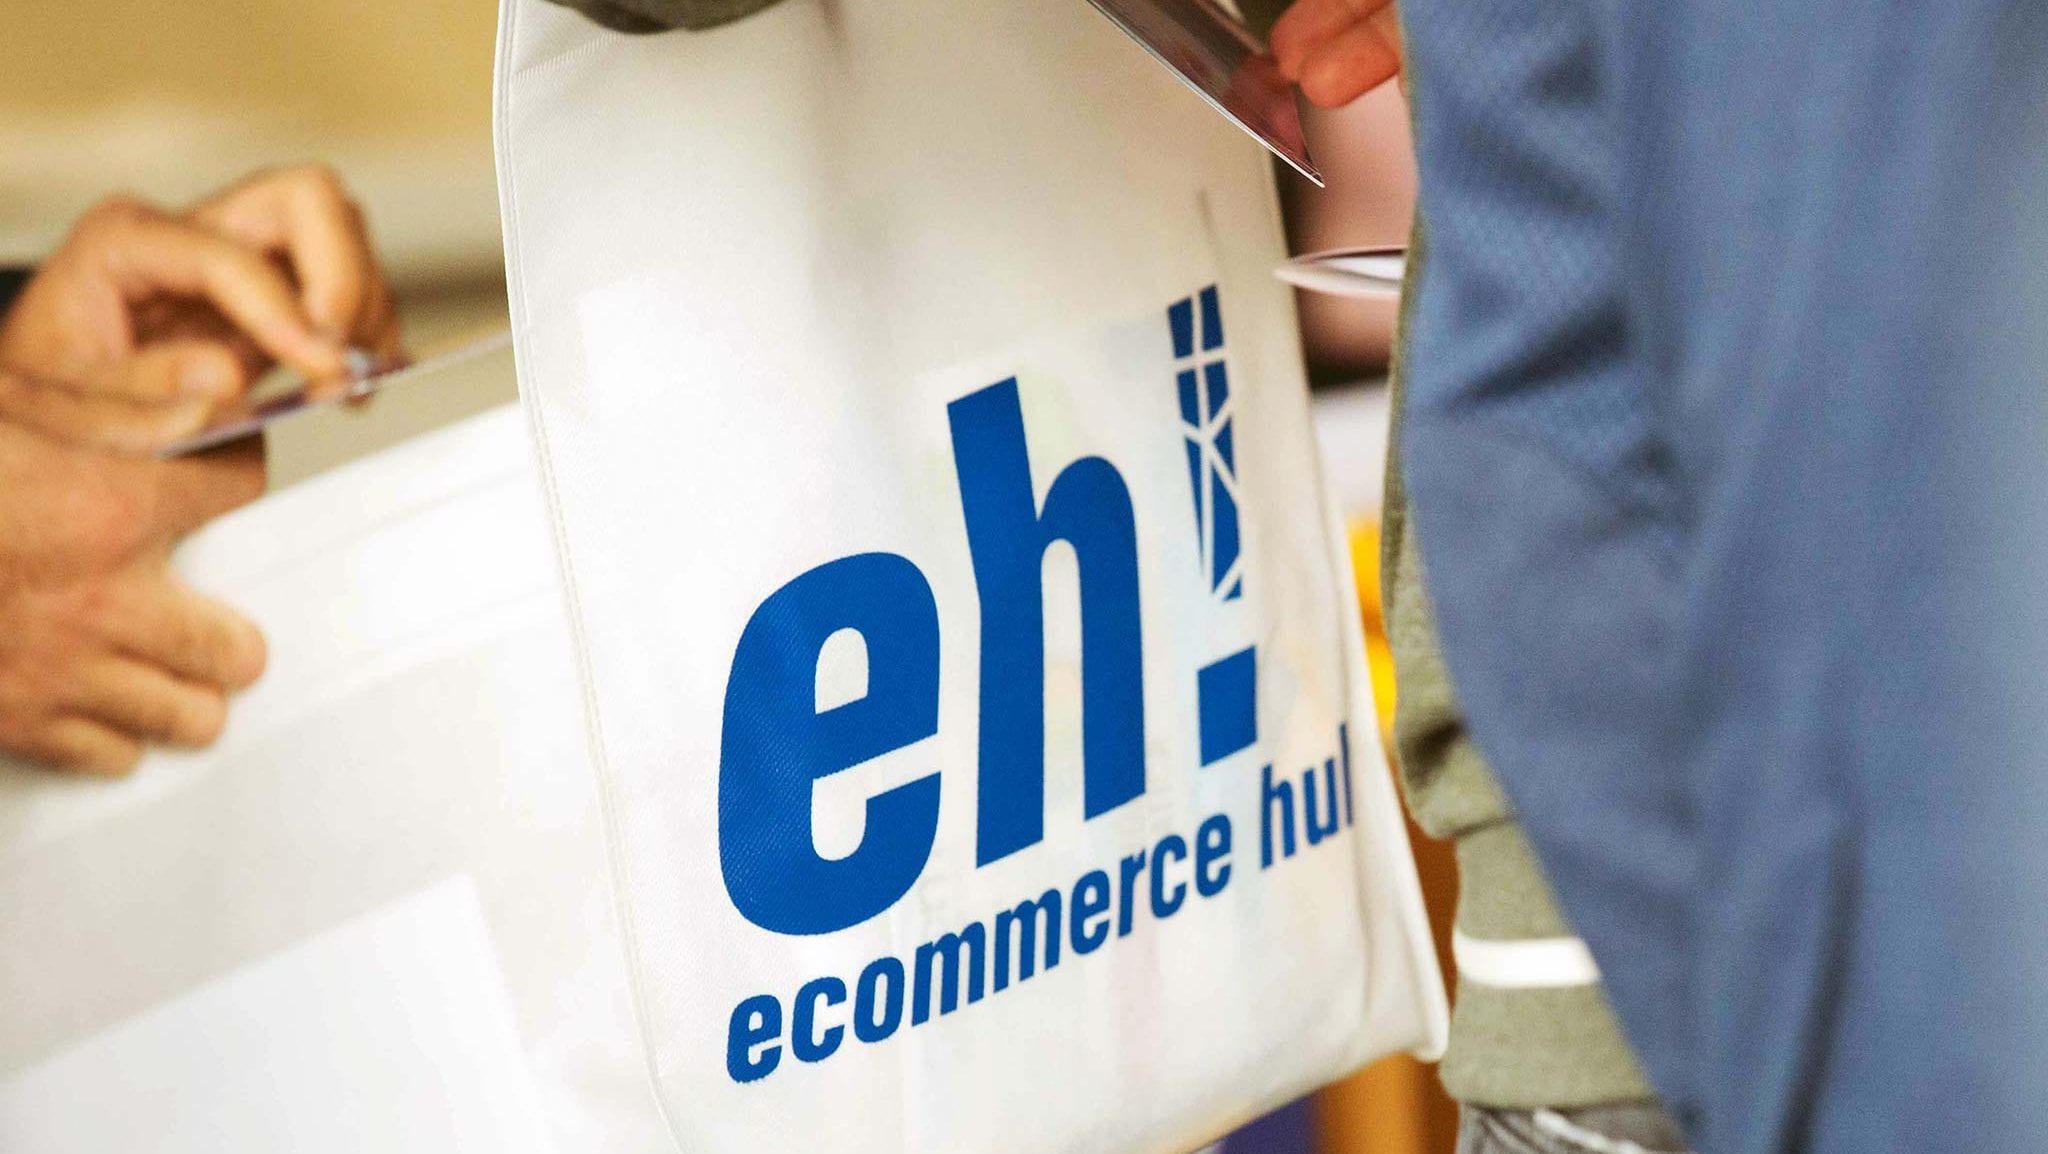  Ecommerce Hub: il 4 ottobre torna l’evento dedicato al commercio online